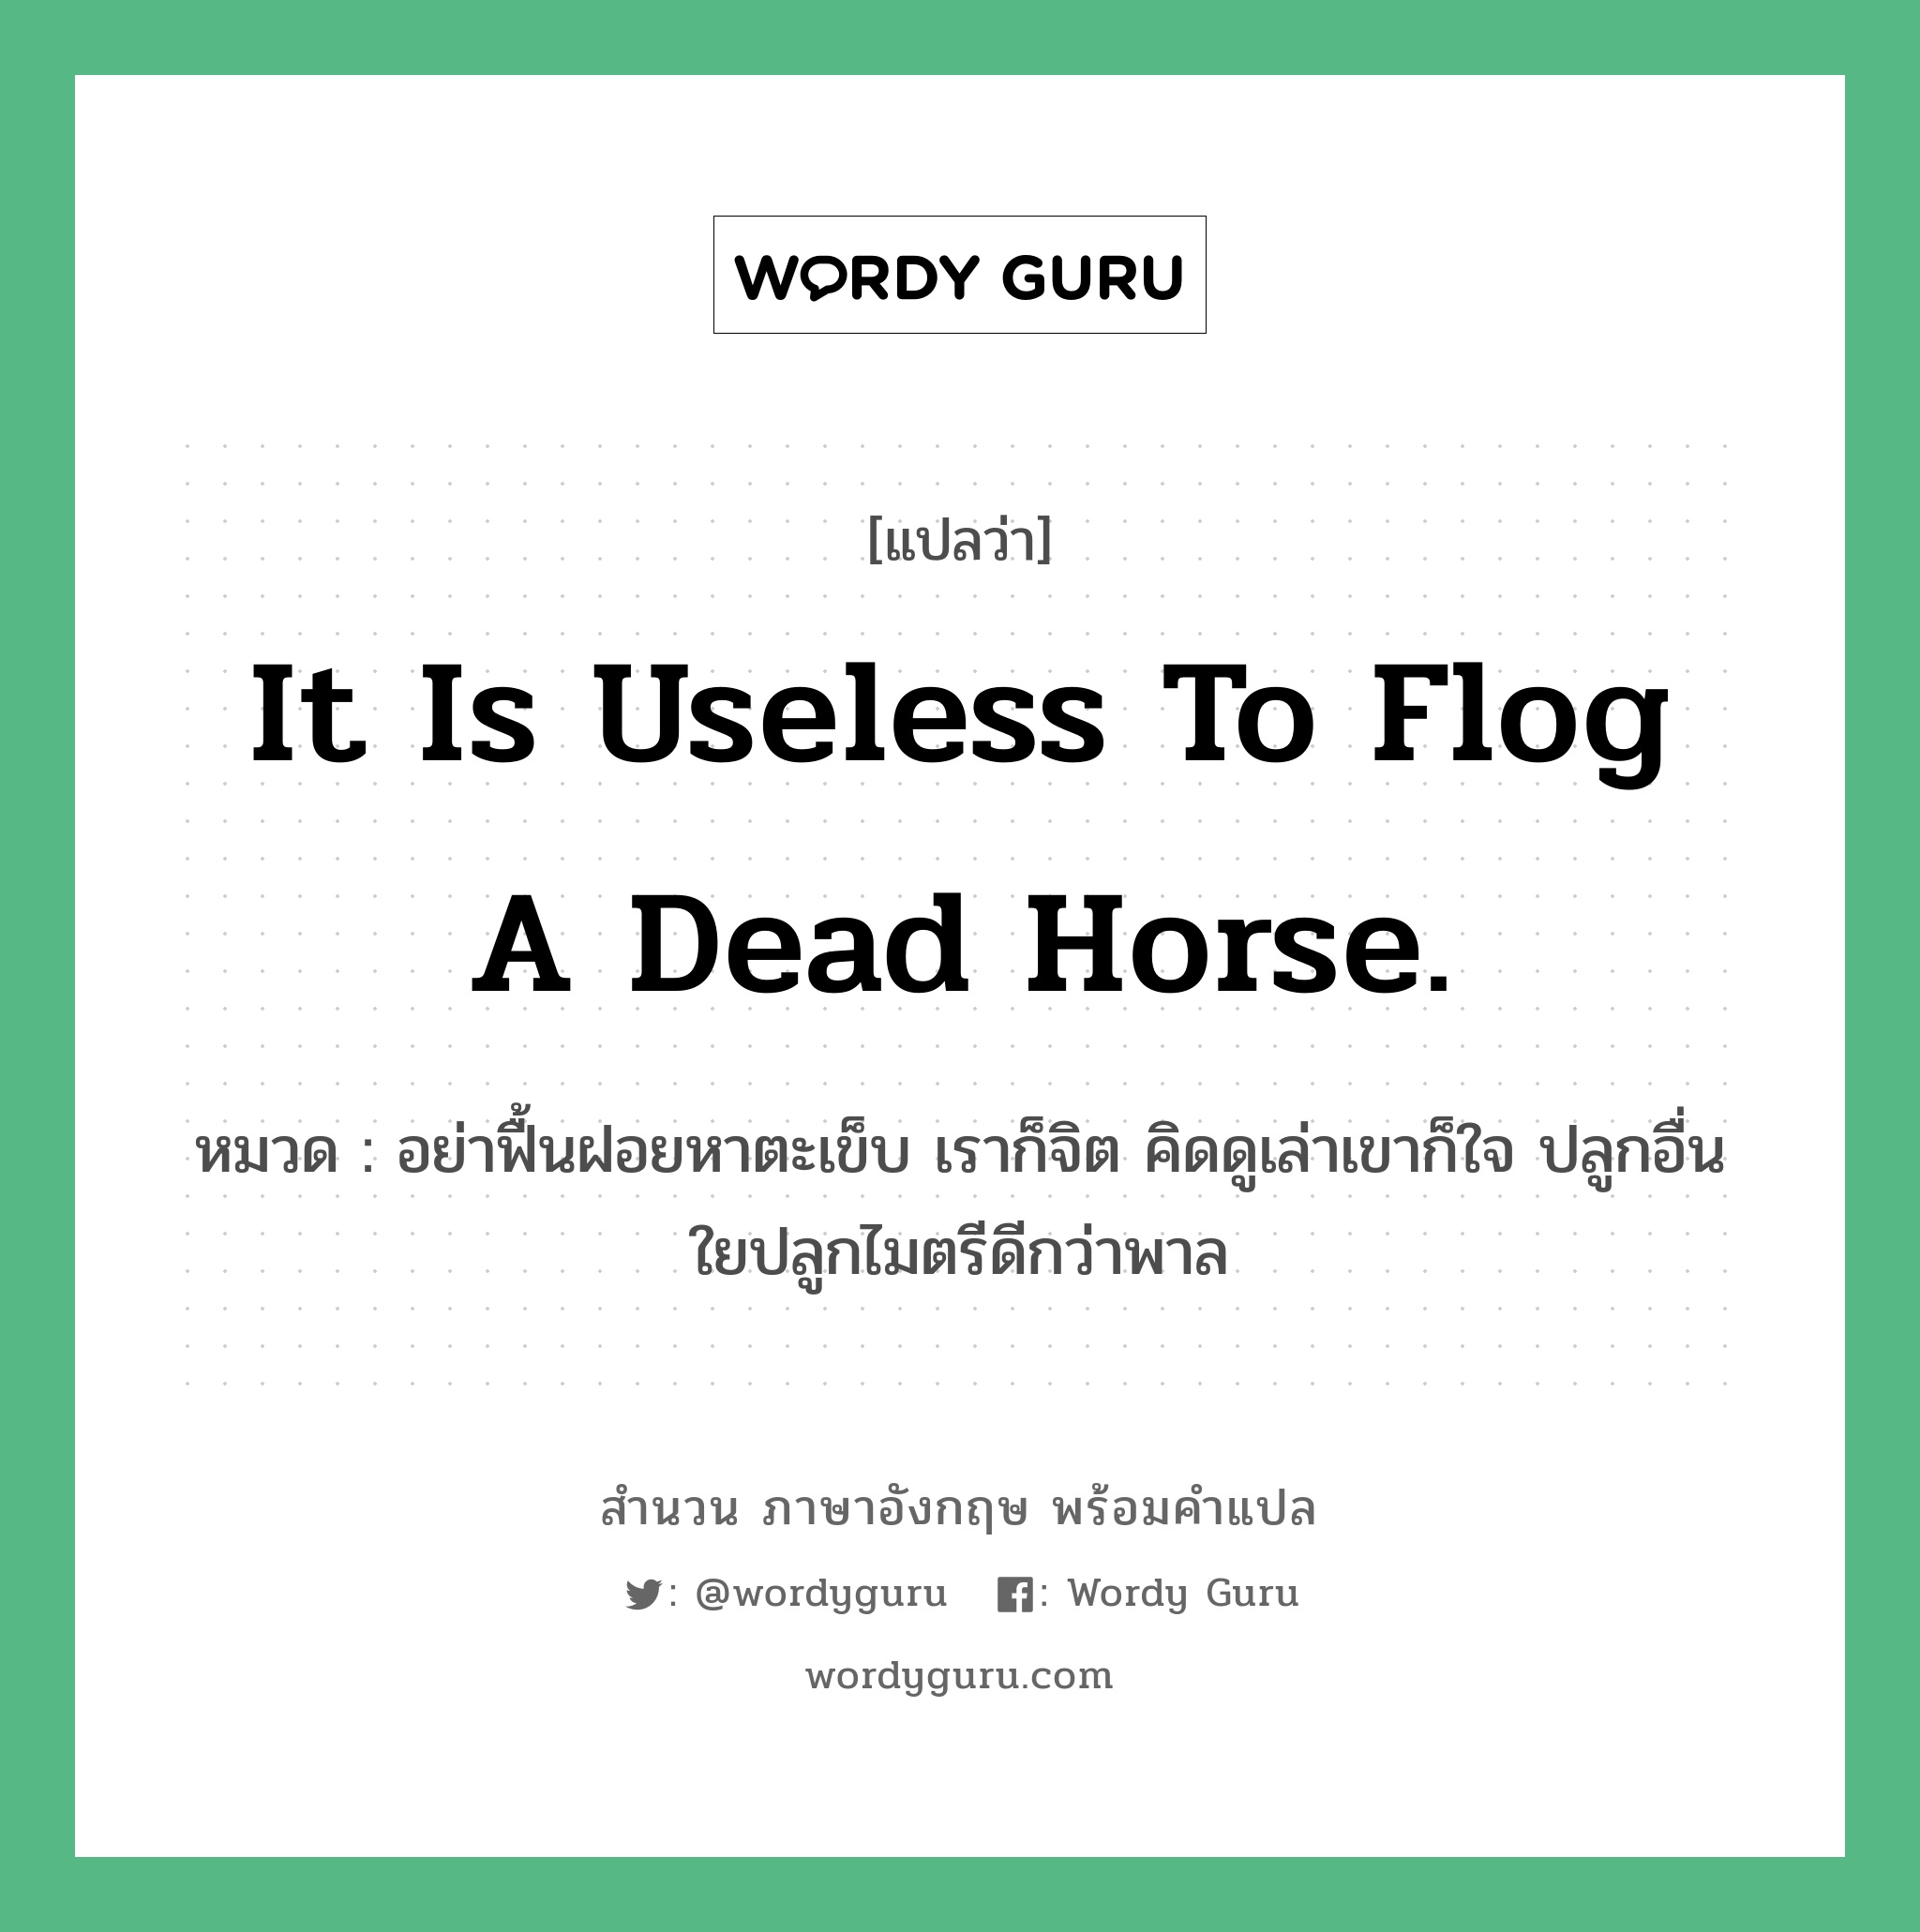 It is useless to flog a dead horse. แปลว่า?, สำนวนภาษาอังกฤษ It is useless to flog a dead horse. หมวด อย่าฟื้นฝอยหาตะเข็บ เราก็จิต คิดดูเล่าเขาก็ใจ ปลูกอื่นใยปลูกไมตรีดีกว่าพาล คำสุภาษิต ภาษาอังกฤษ หมวด คำสุภาษิต ภาษาอังกฤษ